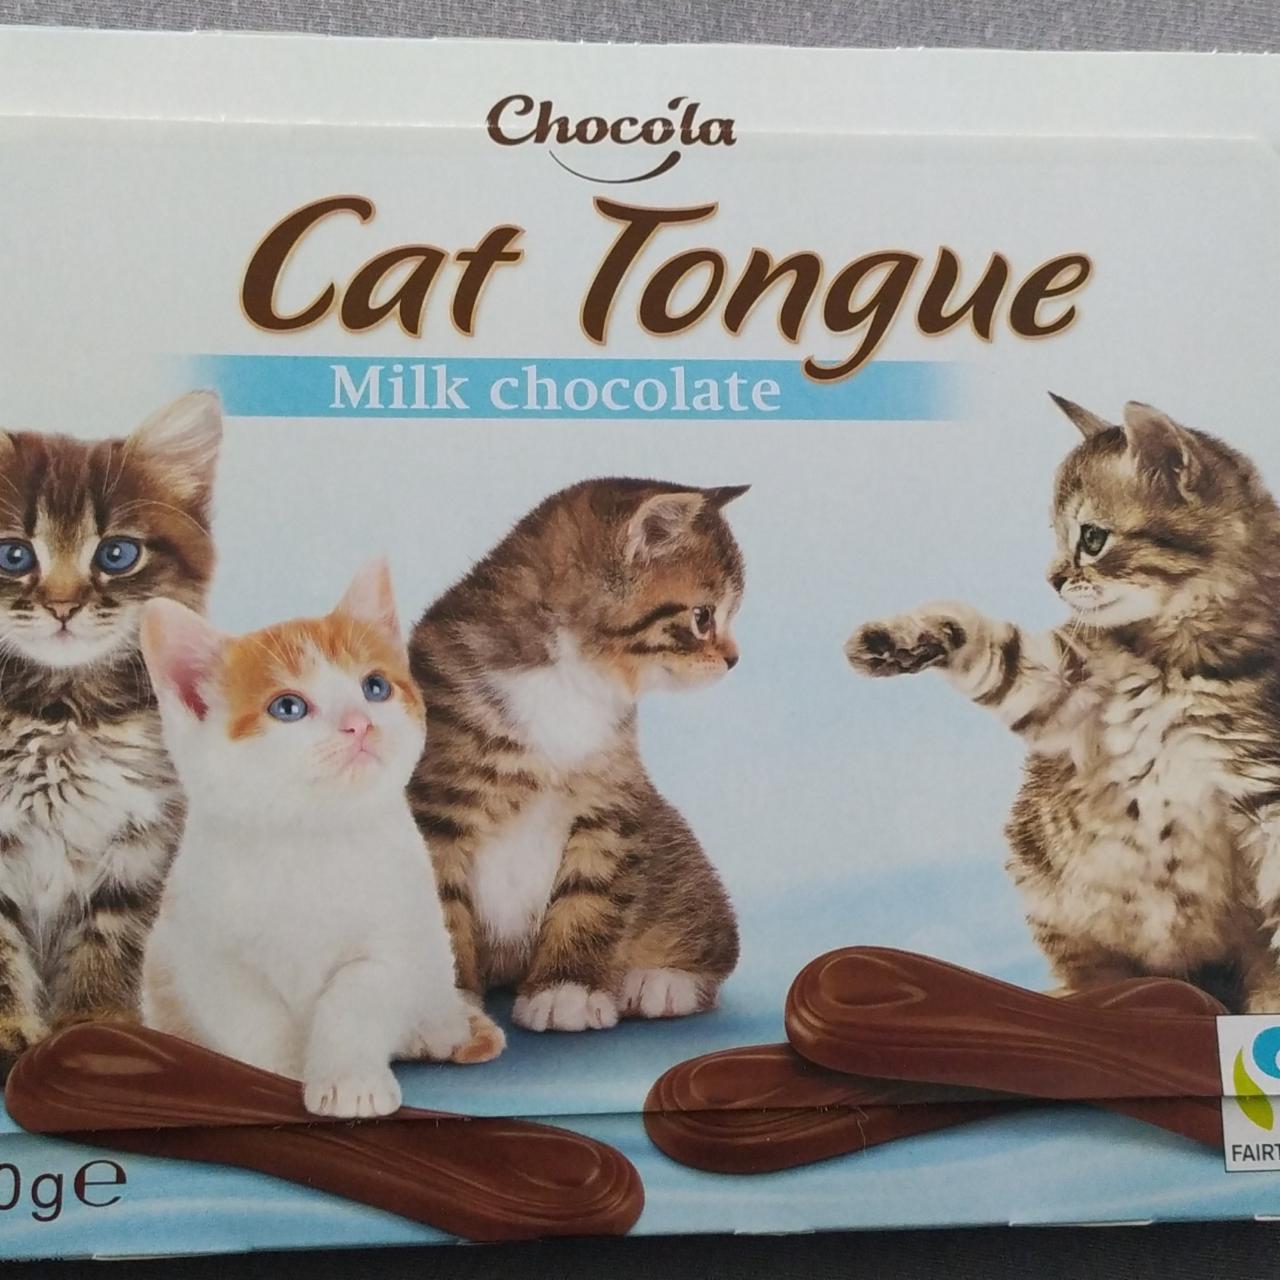 Fotografie - Cat tongue Milk chocolate Chocola